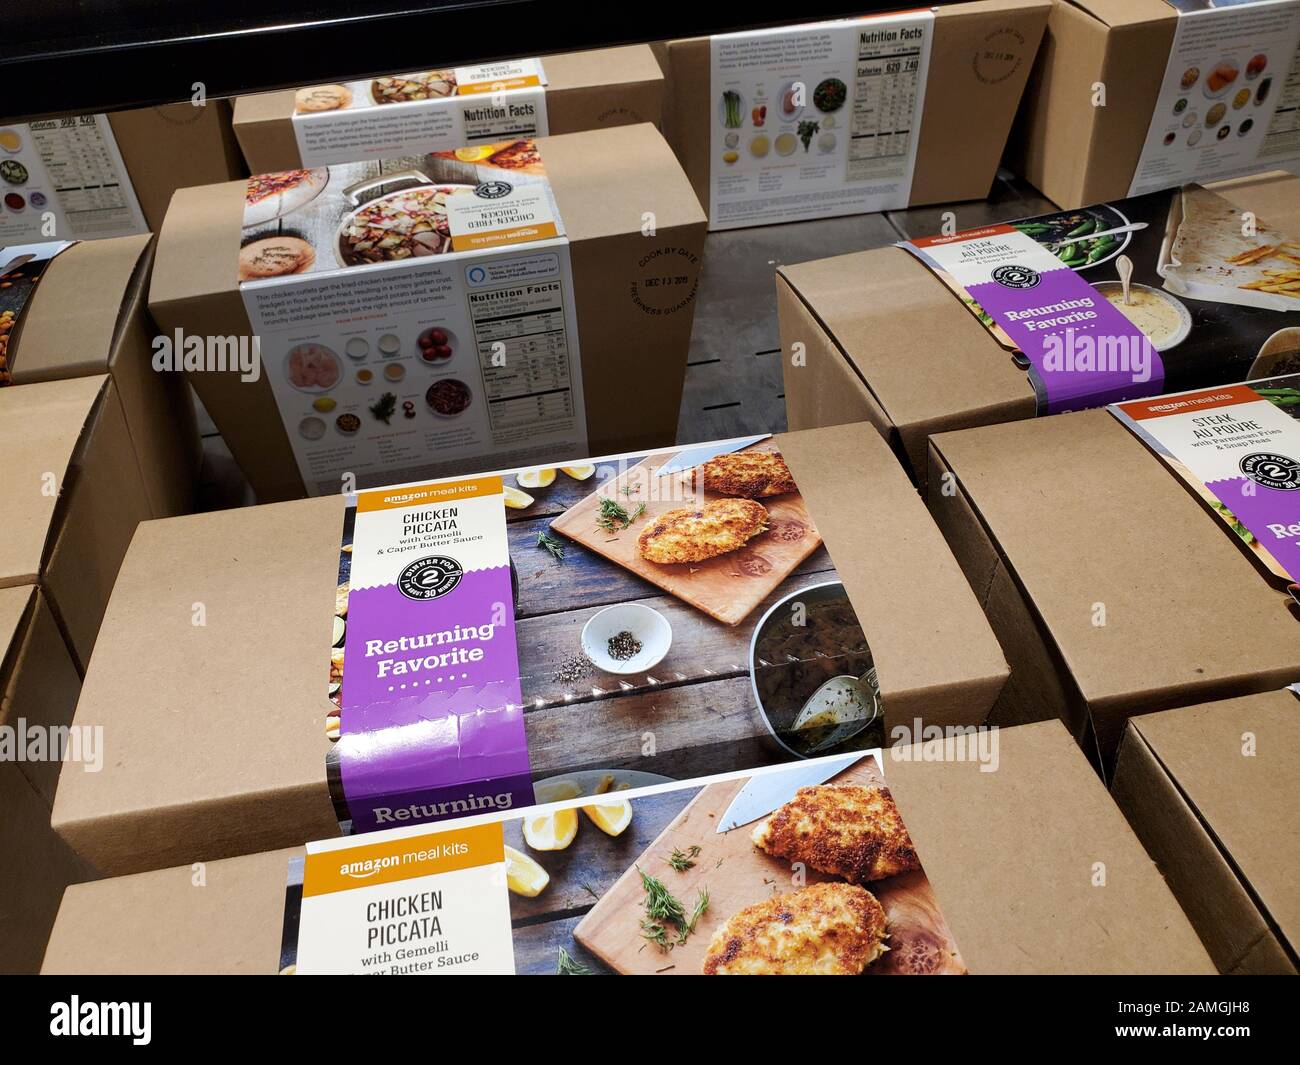 Primer plano de una muestra de kits de comida de Amazon, ingredientes  preenvasados y recetas ofrecidas por Amazon.com como parte de su  adquisición de la cadena de alimentación de primera clase Whole